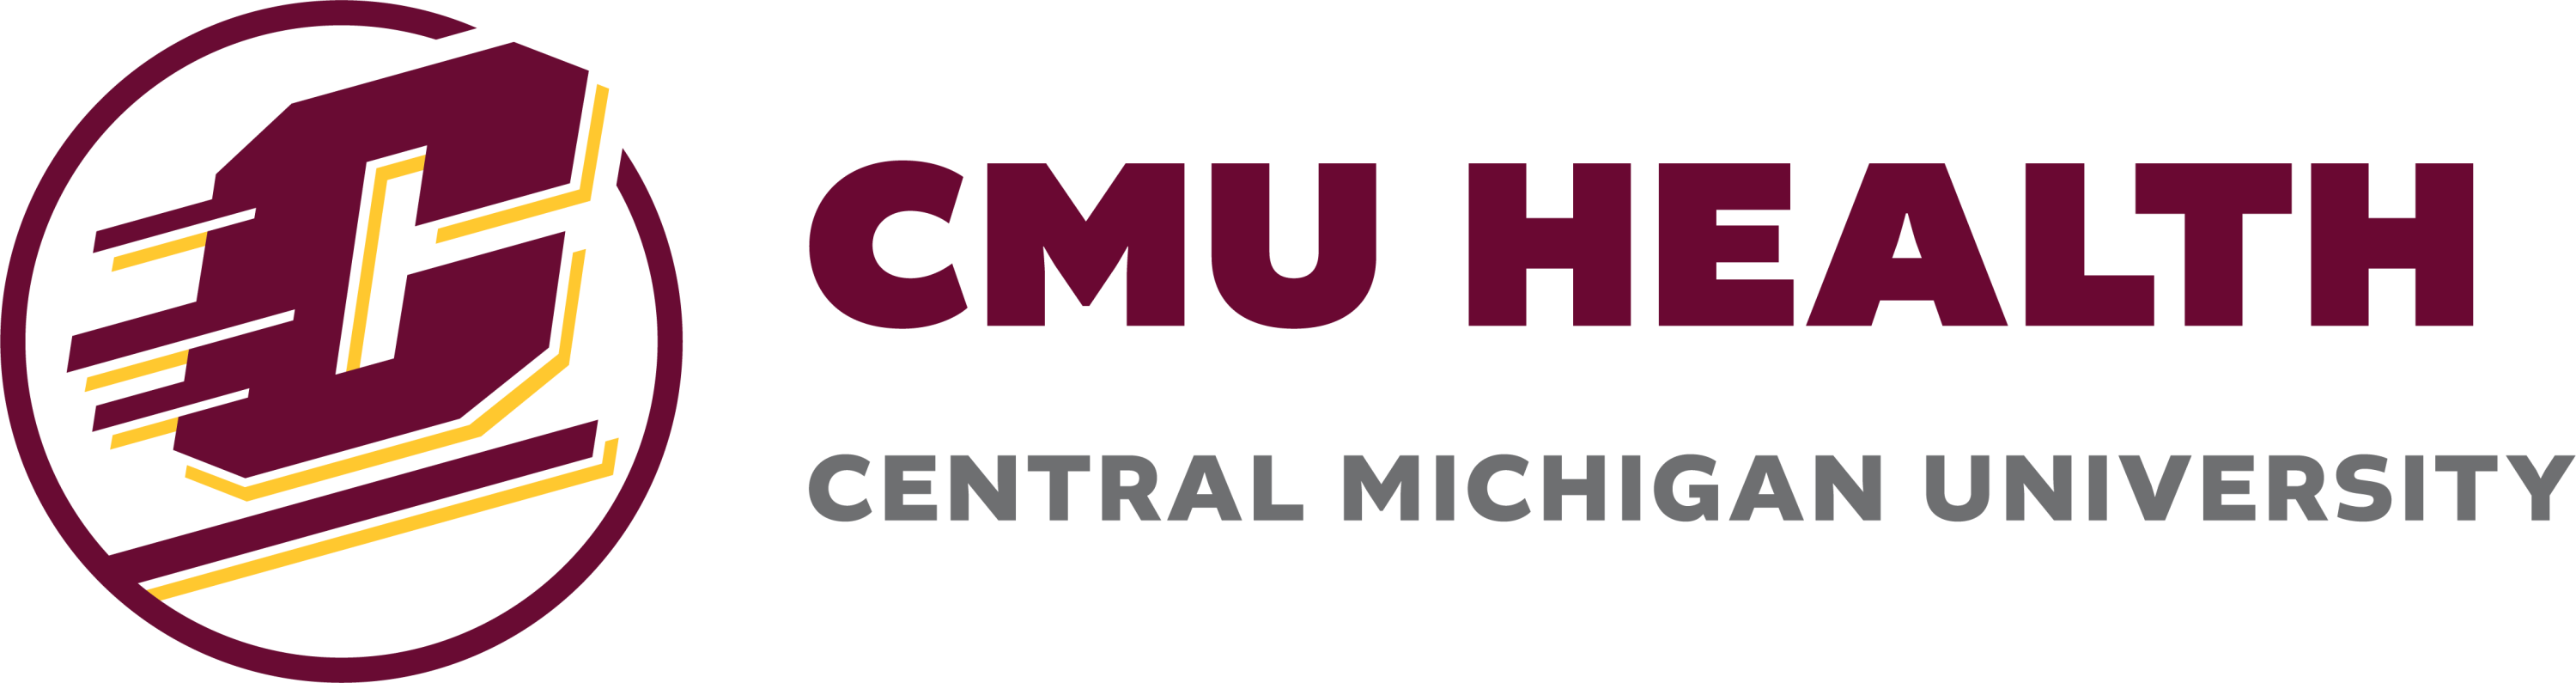 CMU Medical Education Partners's Image